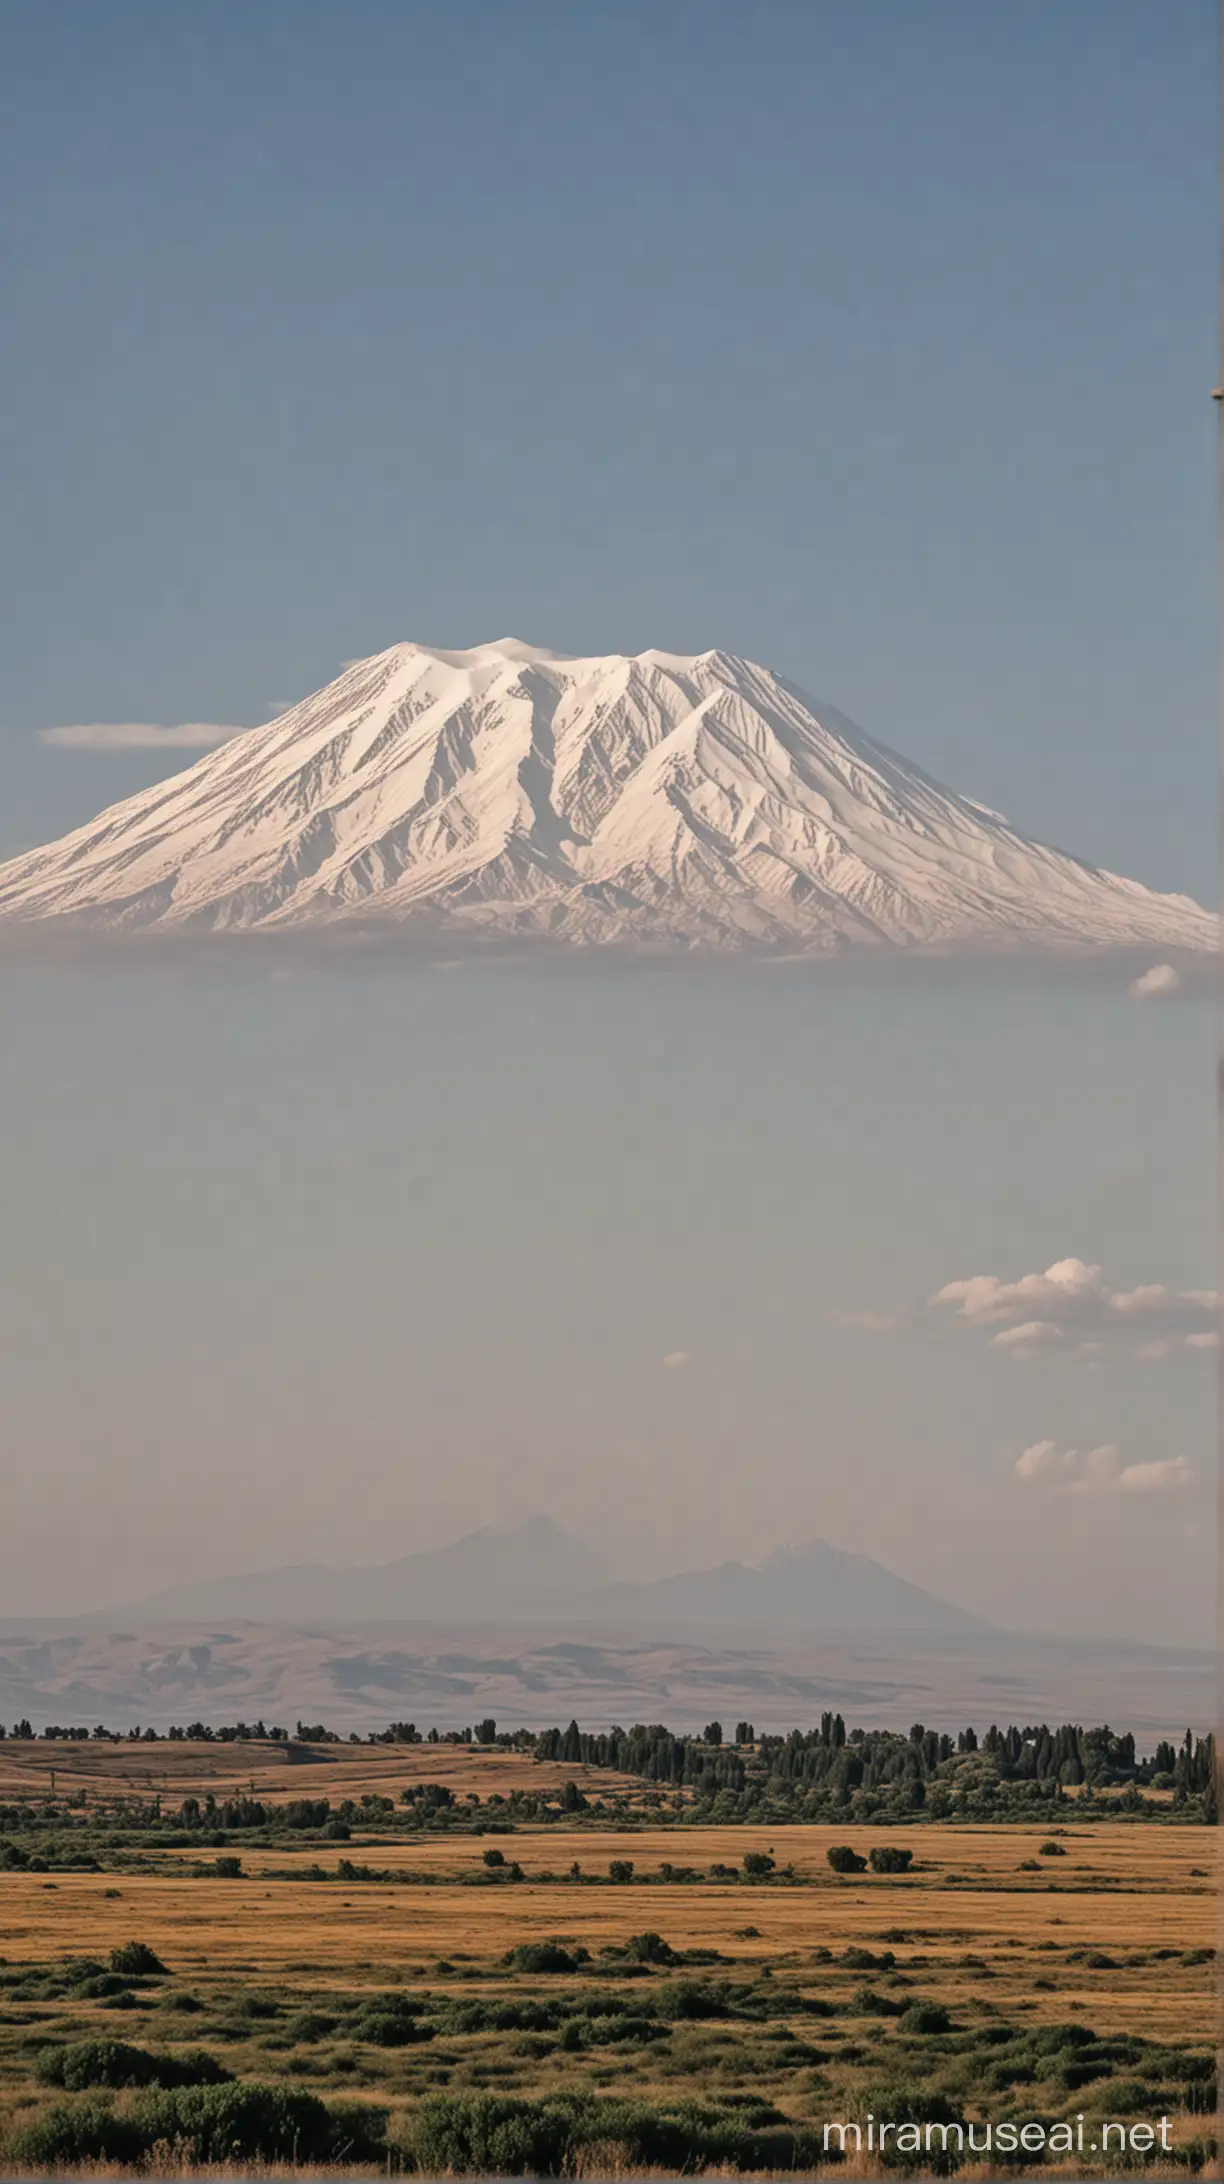 mountain Ararat
